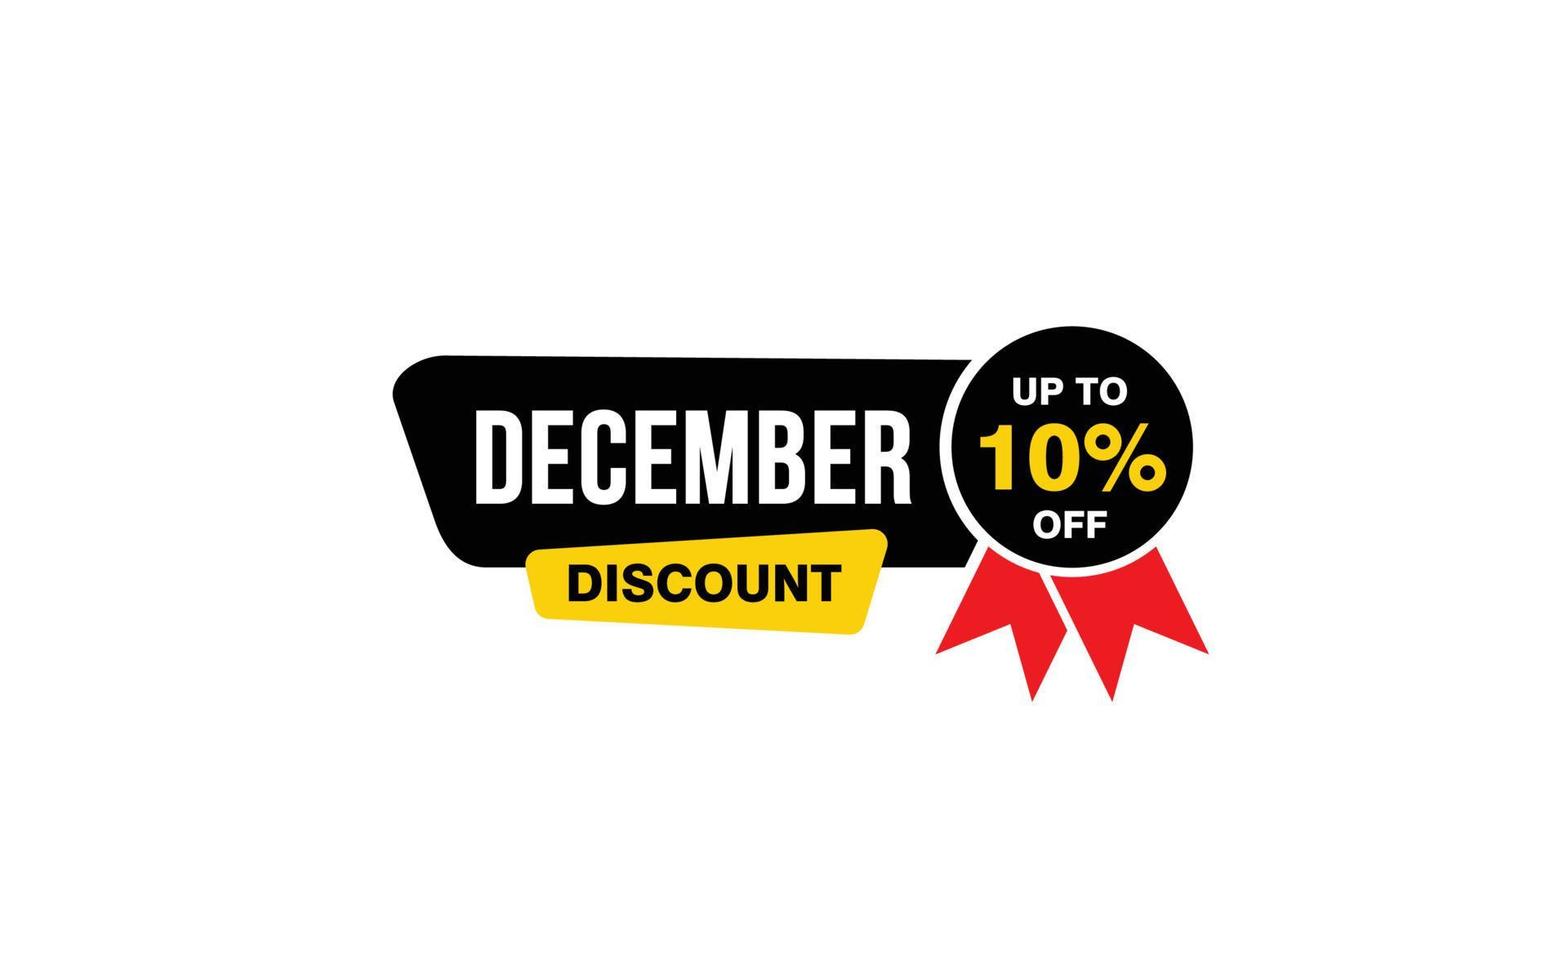 Oferta de descuento del 10 por ciento de diciembre, liquidación, diseño de banner de promoción con estilo de etiqueta. vector